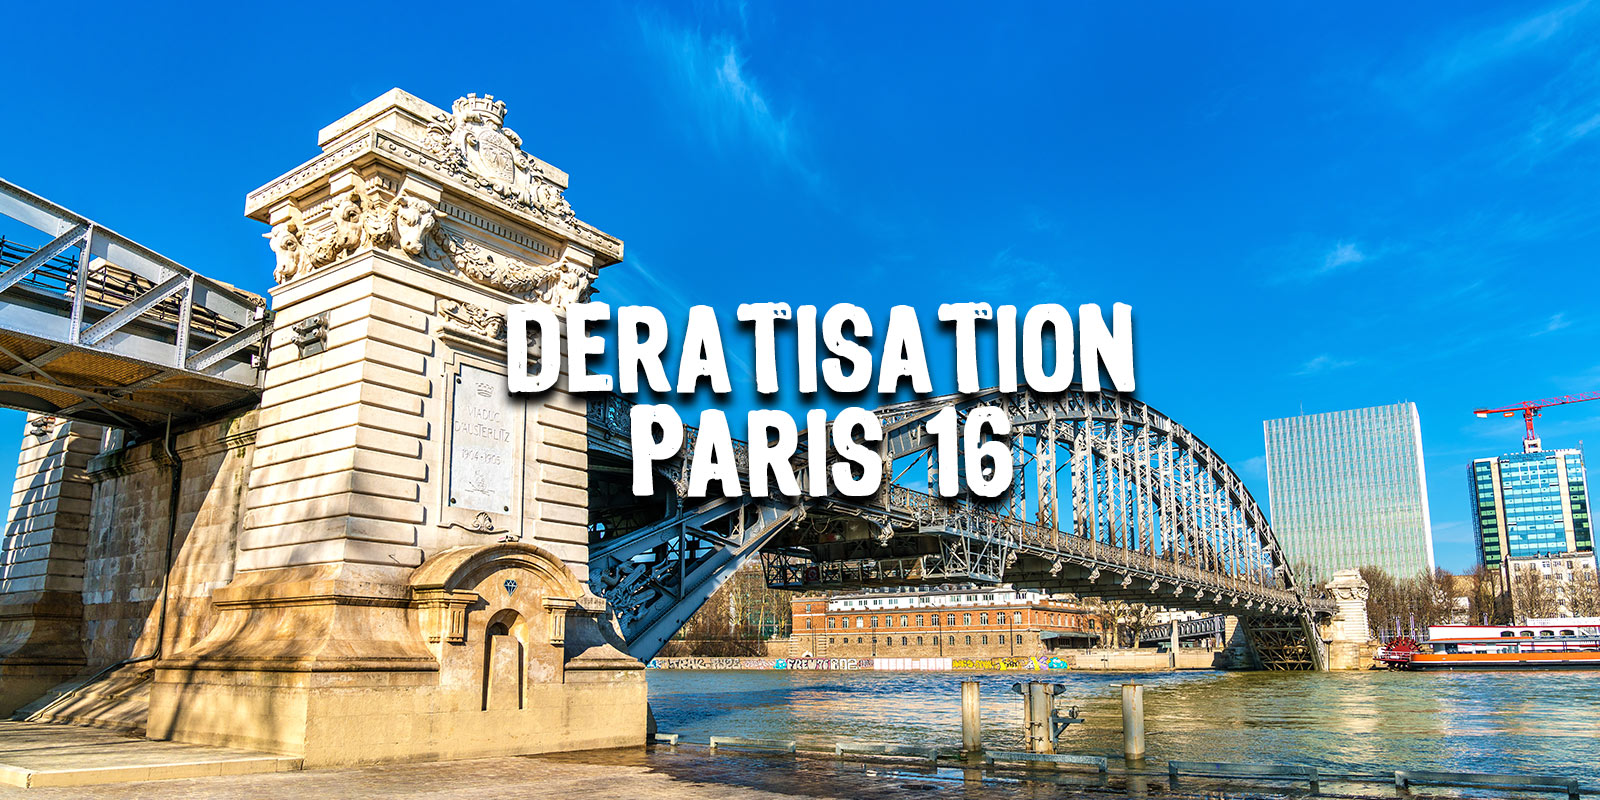 Dératisation Paris 16